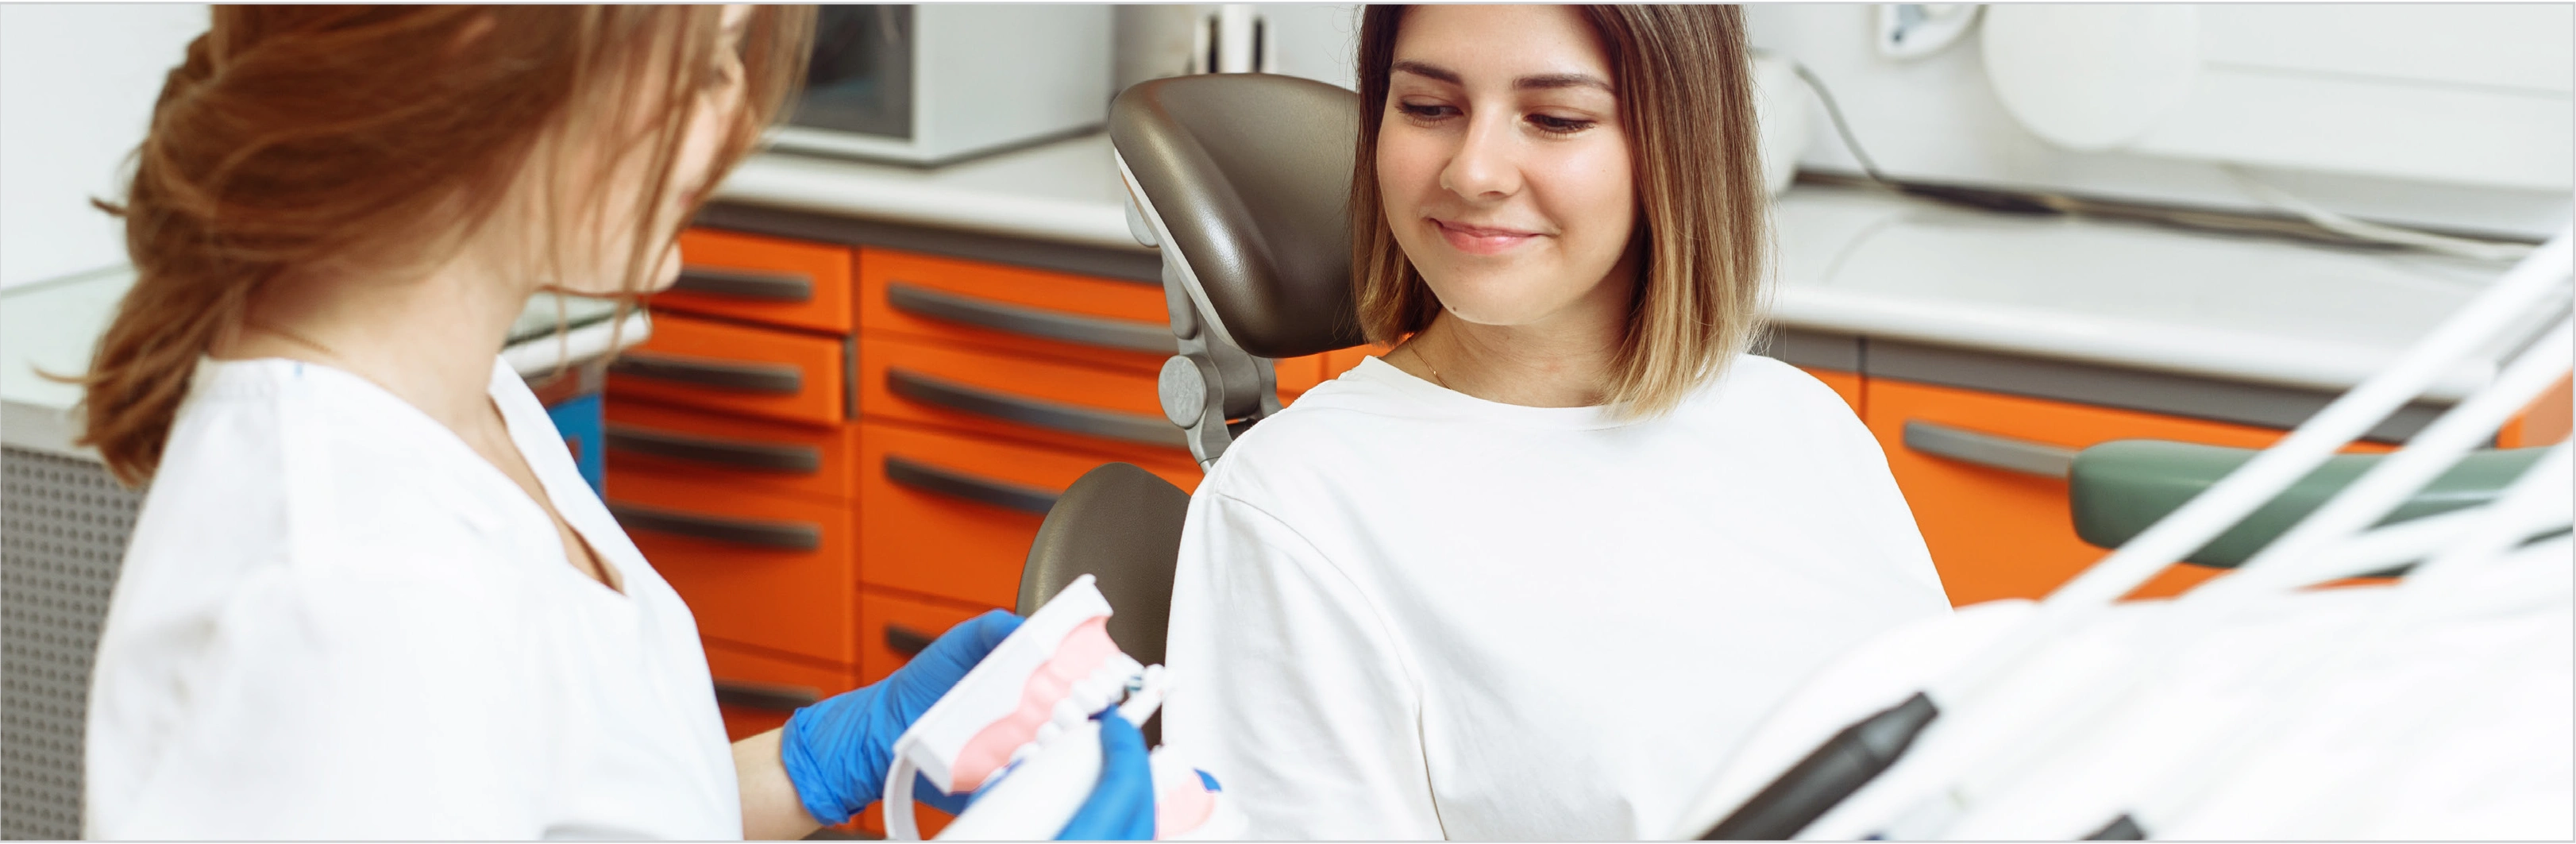 Une expérience dentaire positive peut avoir une grande incidence sur la motivation du patient et la productivité d’un cabinet.